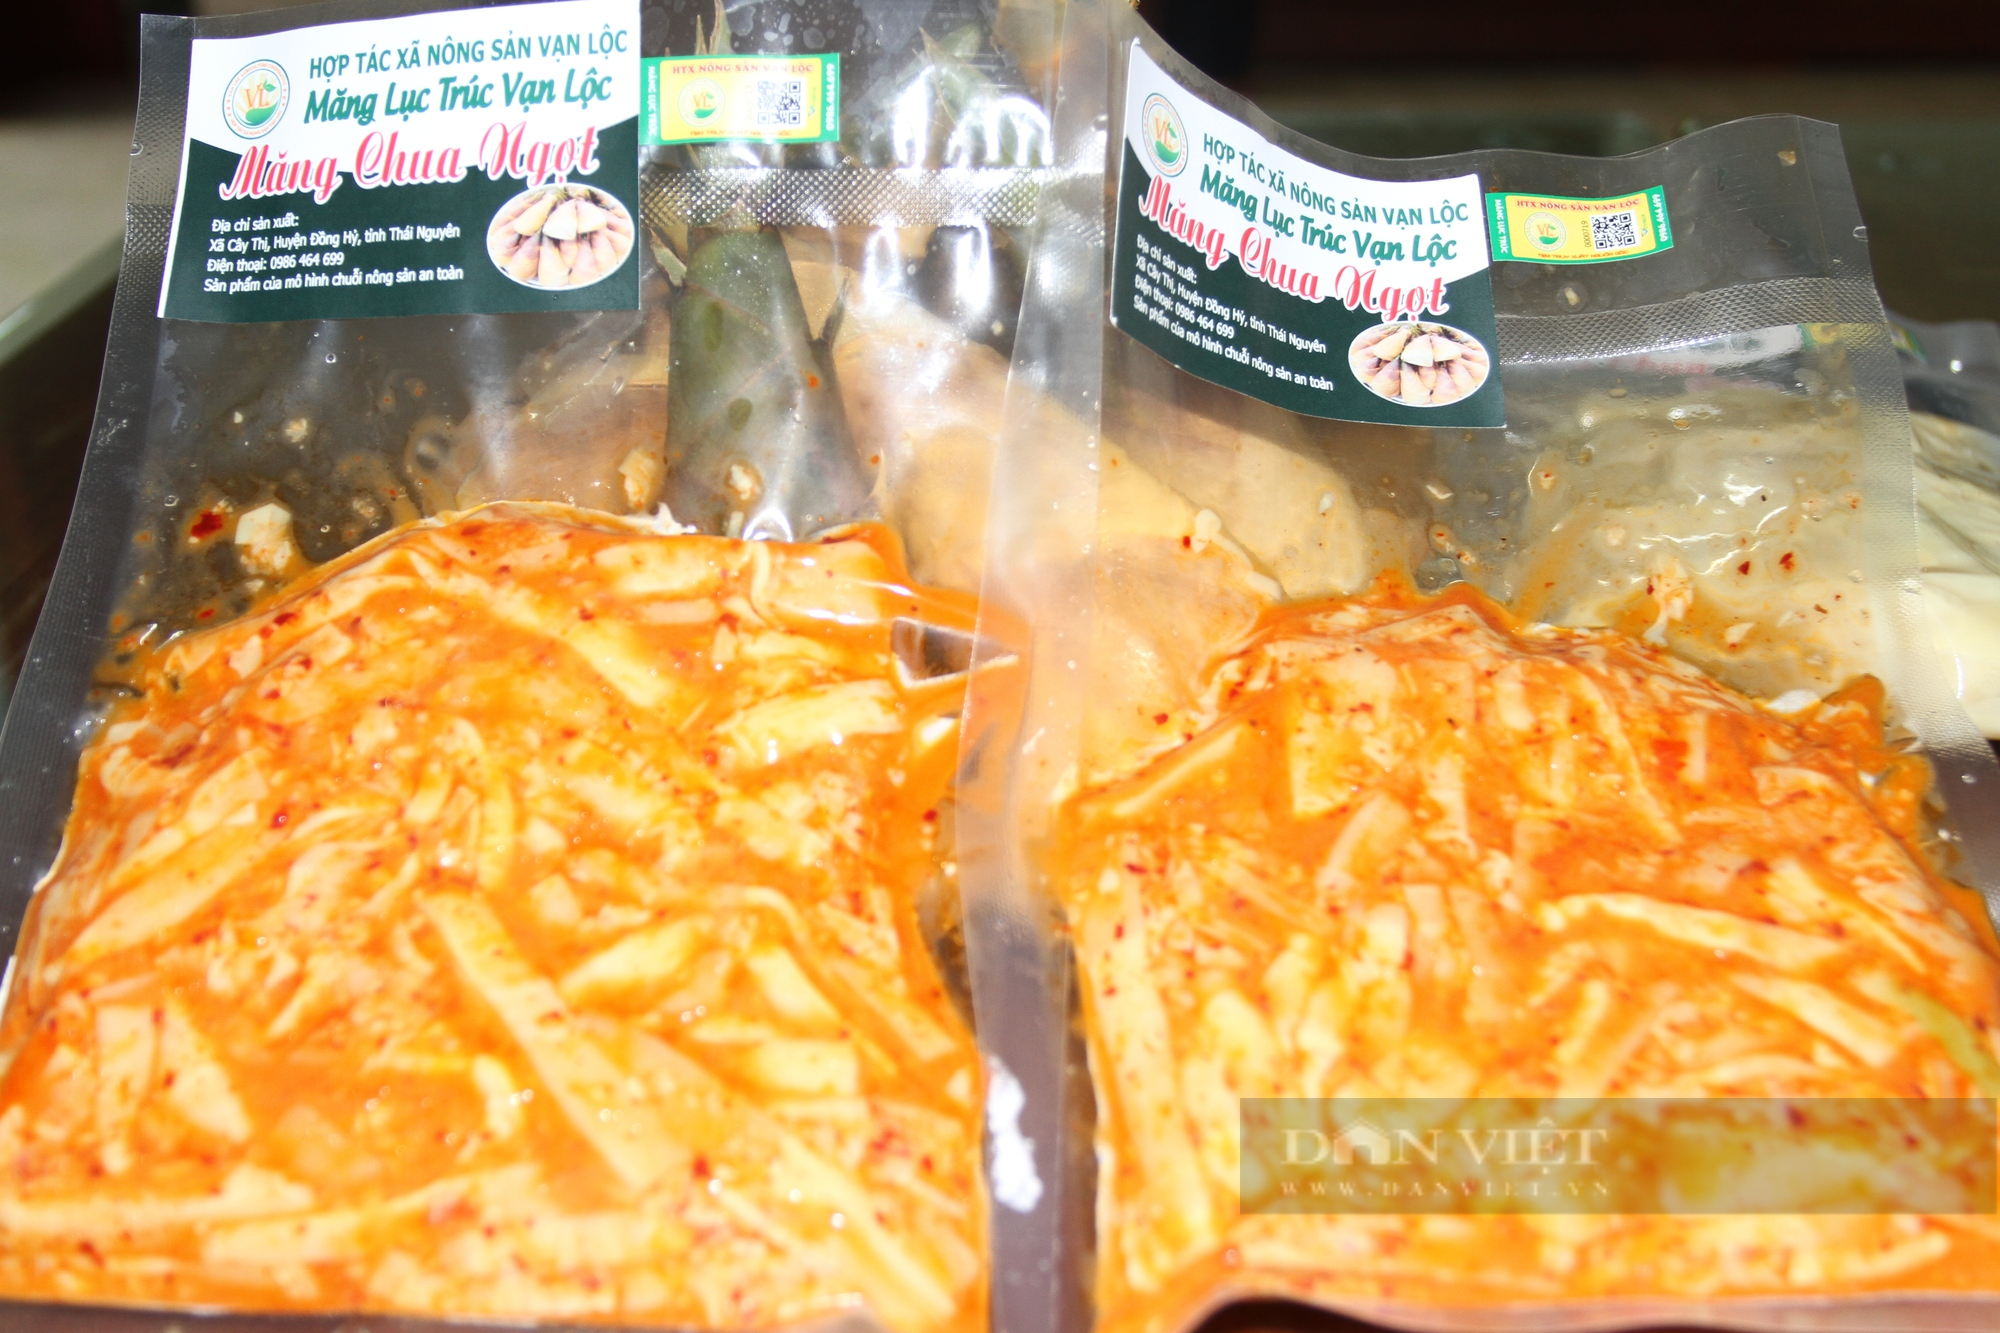 Món ăn chua ngọt làm từ măng lục trúc có gì đặc biệt mà HTX này ở Thái Nguyên không đủ hàng để bán - Ảnh 4.